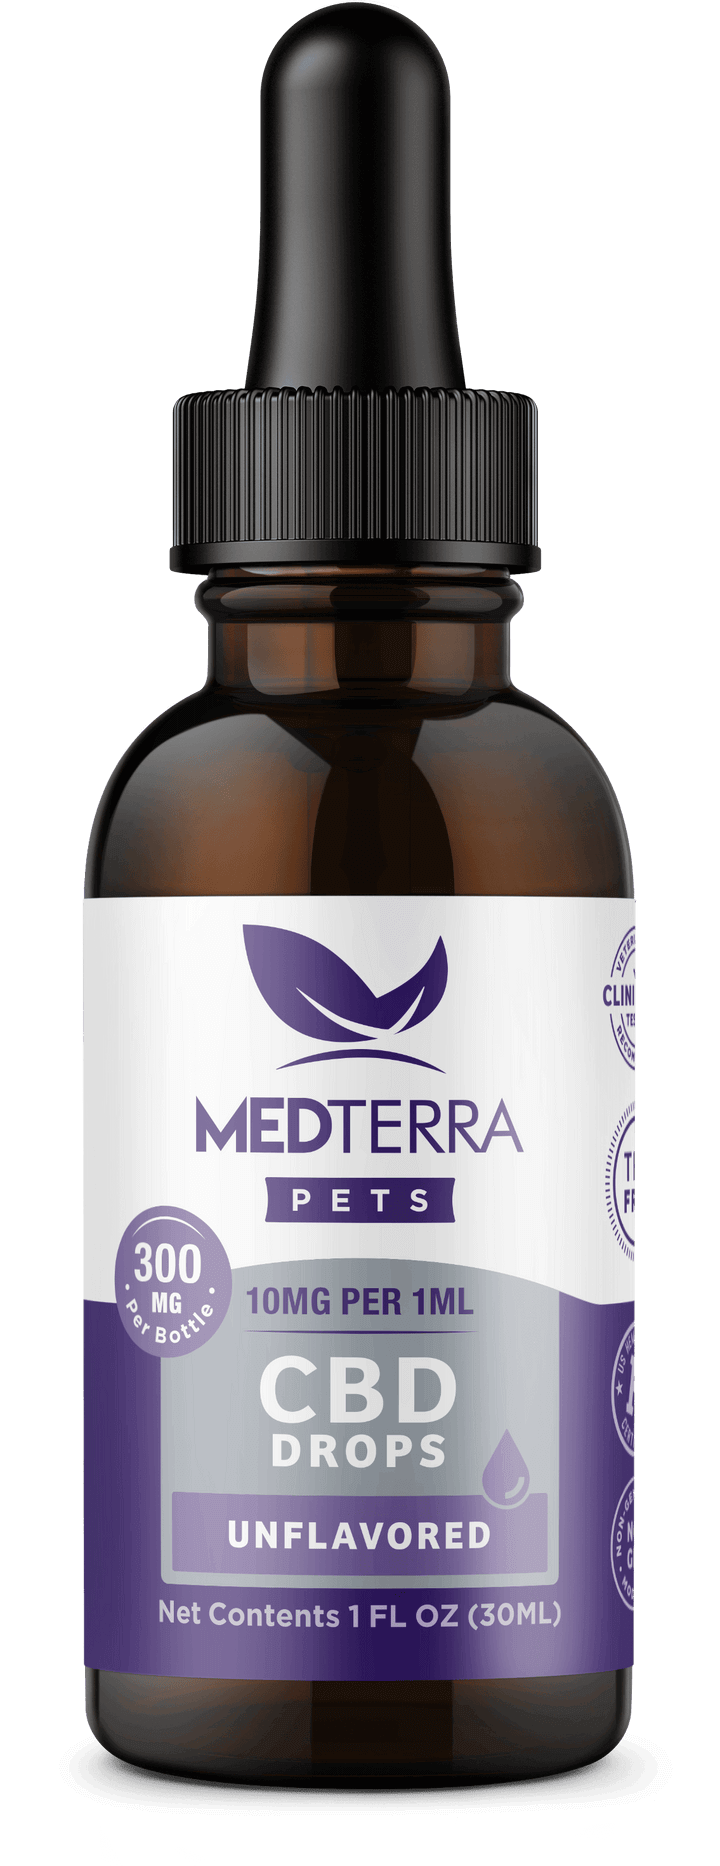 Medterra CBD Pet Oil 300 mg image